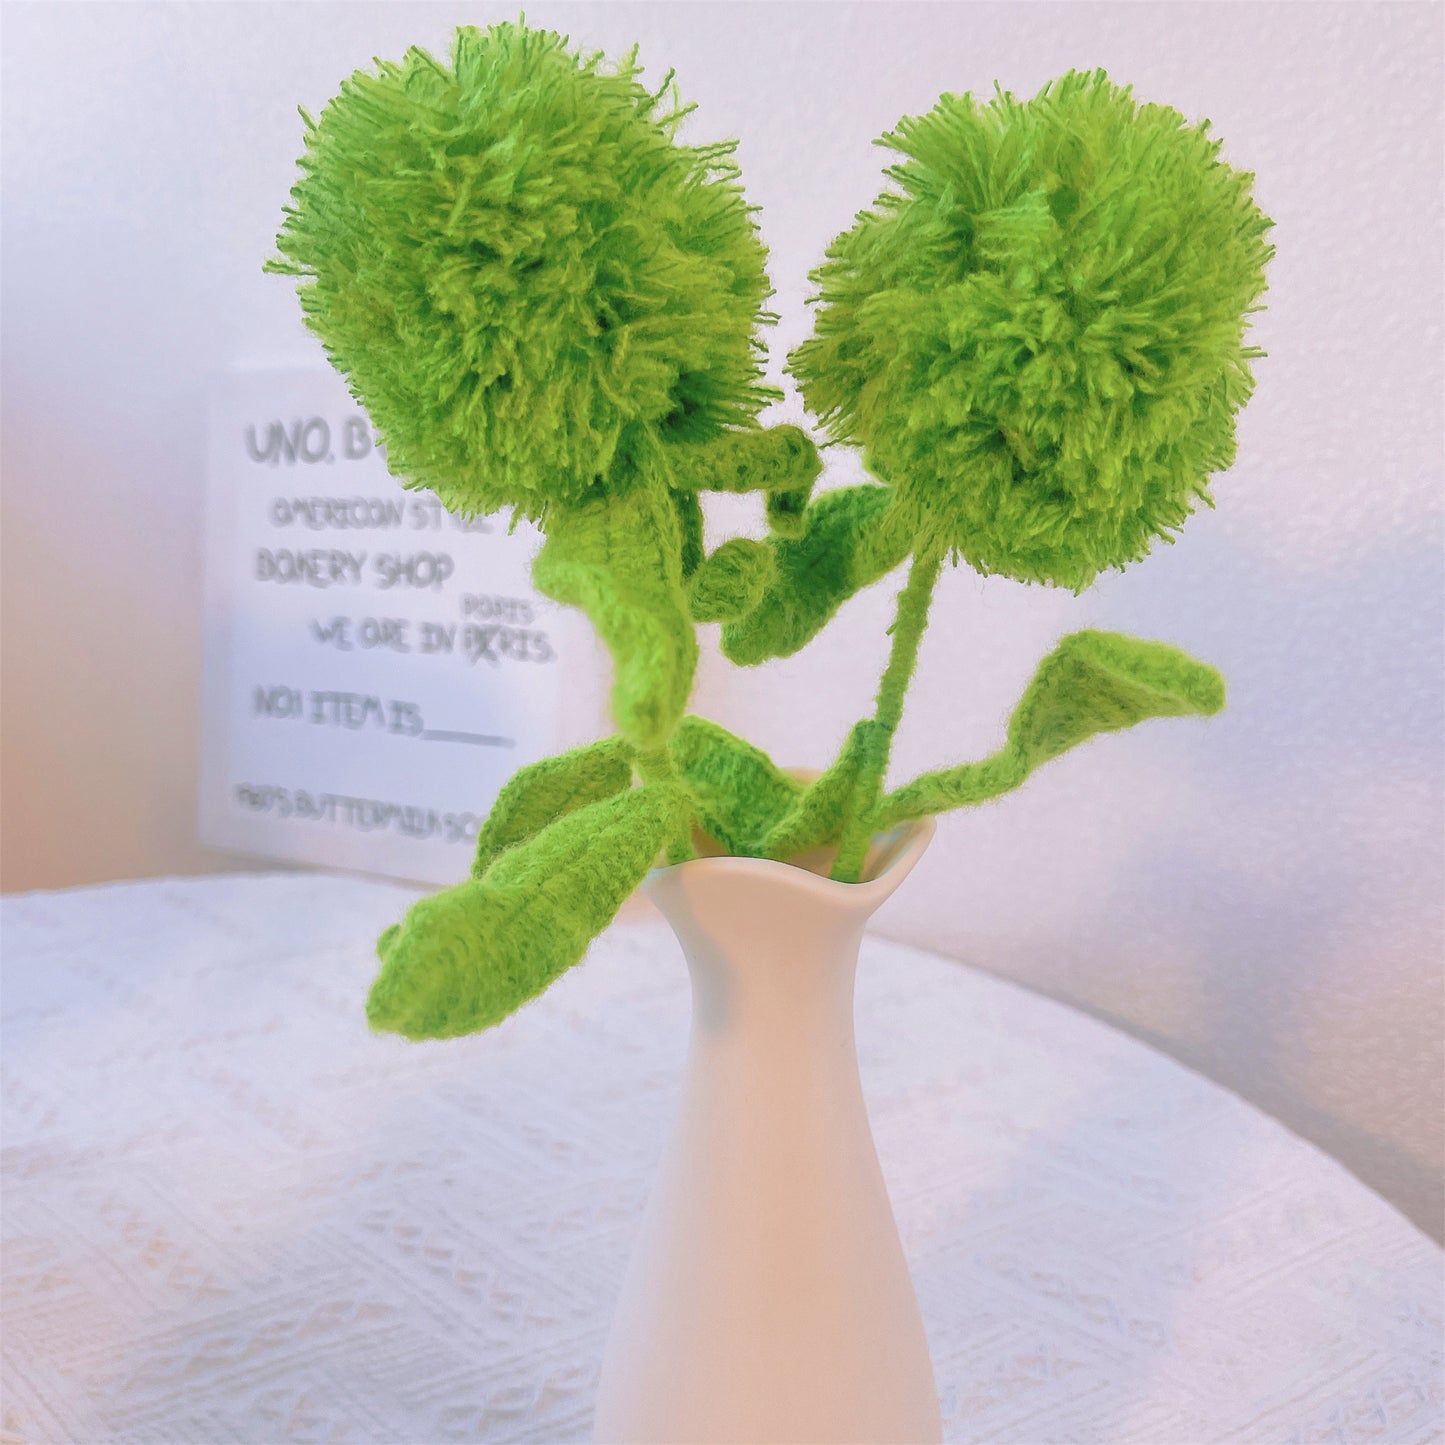 Grüne Nelkenmagie: Handgefertigter gehäkelter grüner Nelkenpfahl für eine bezaubernde Gartendekoration